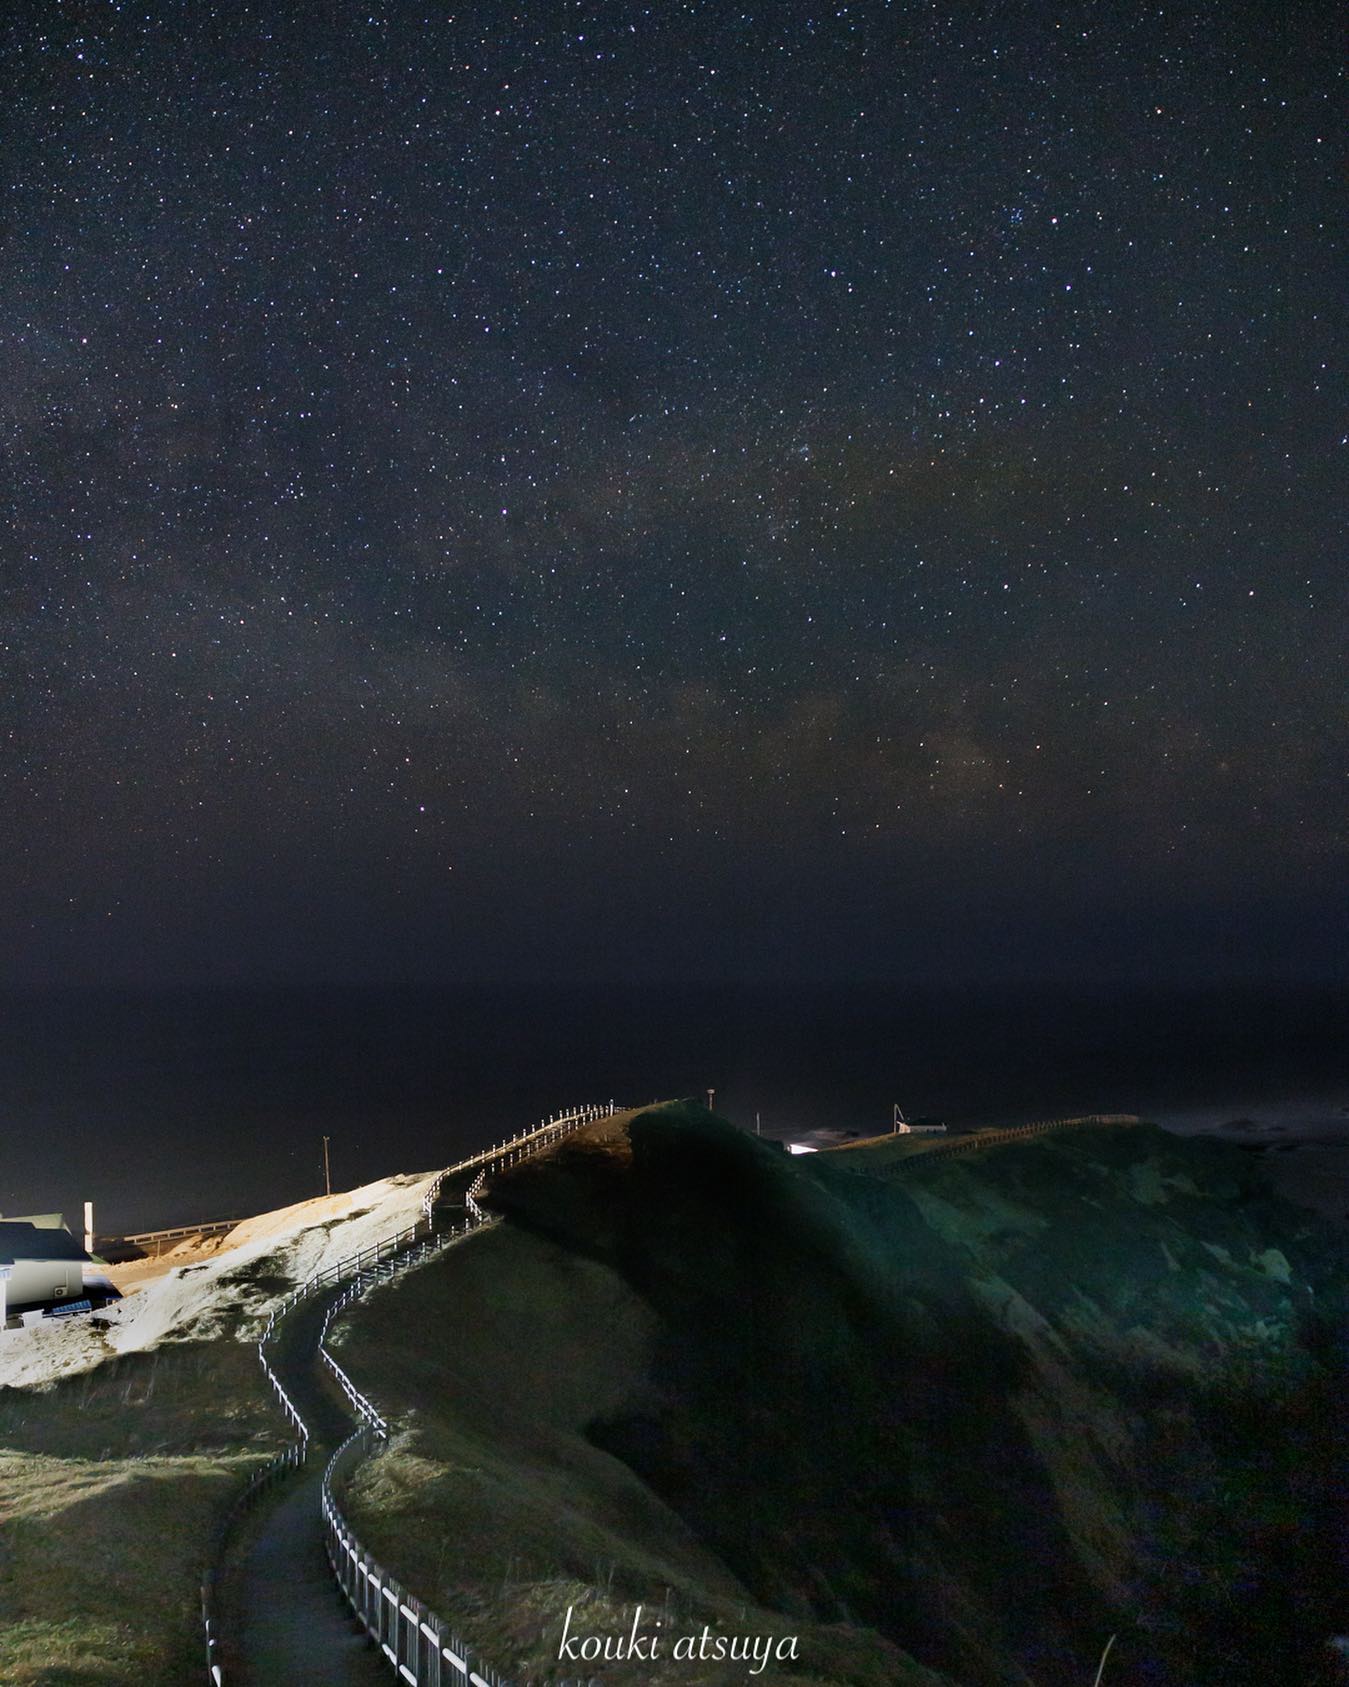 Cape Erimo at night